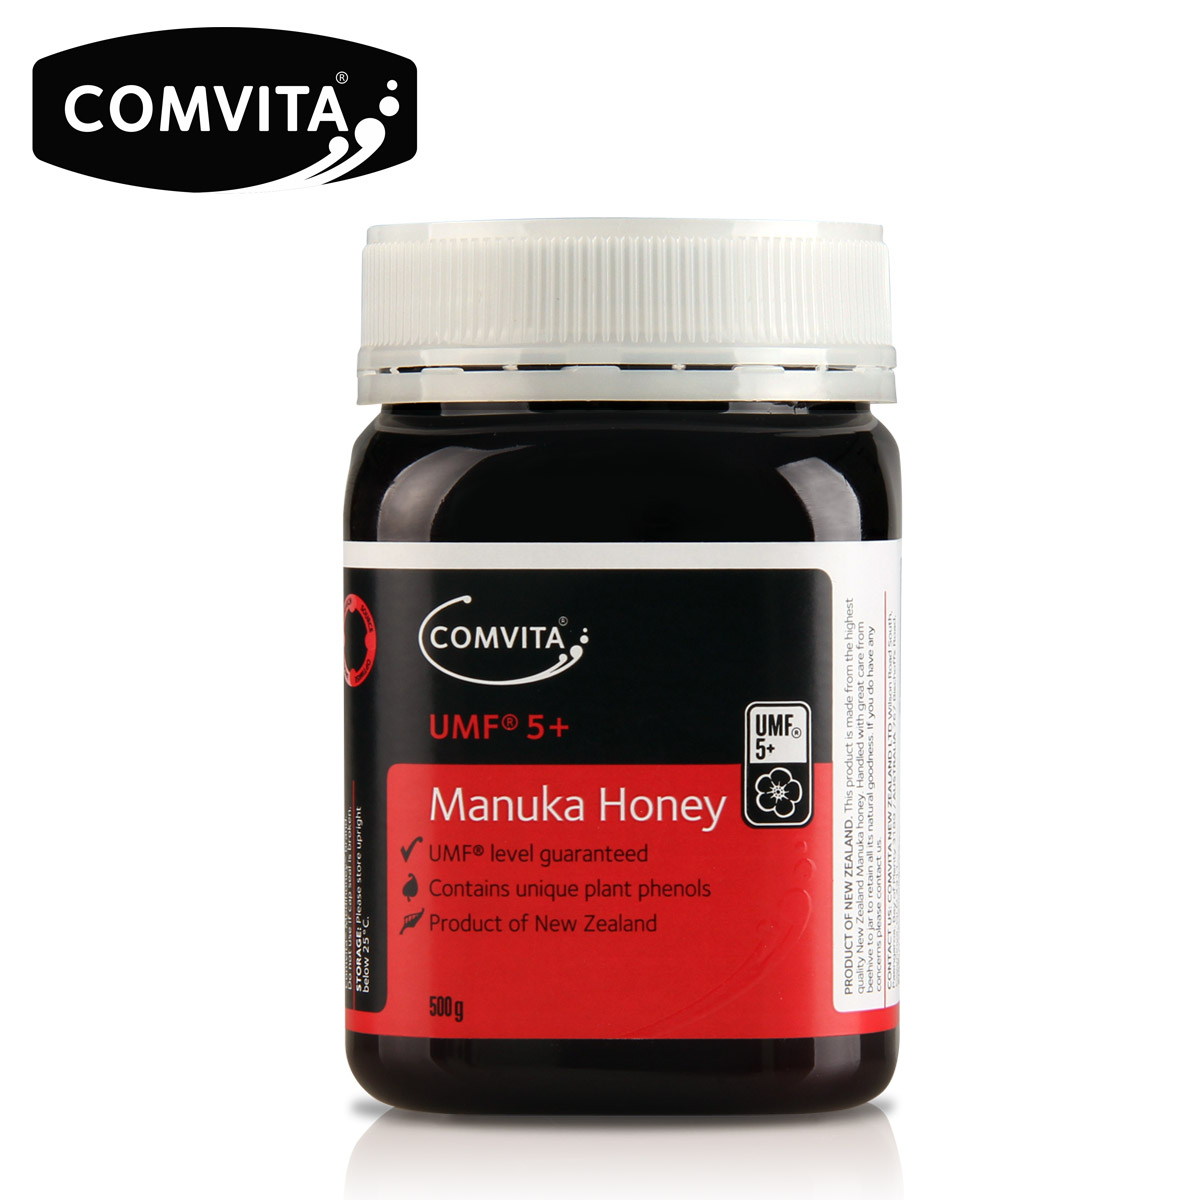 Comvita Manuka Honey 5+ 500g 康维他麦卢卡蜂蜜5+